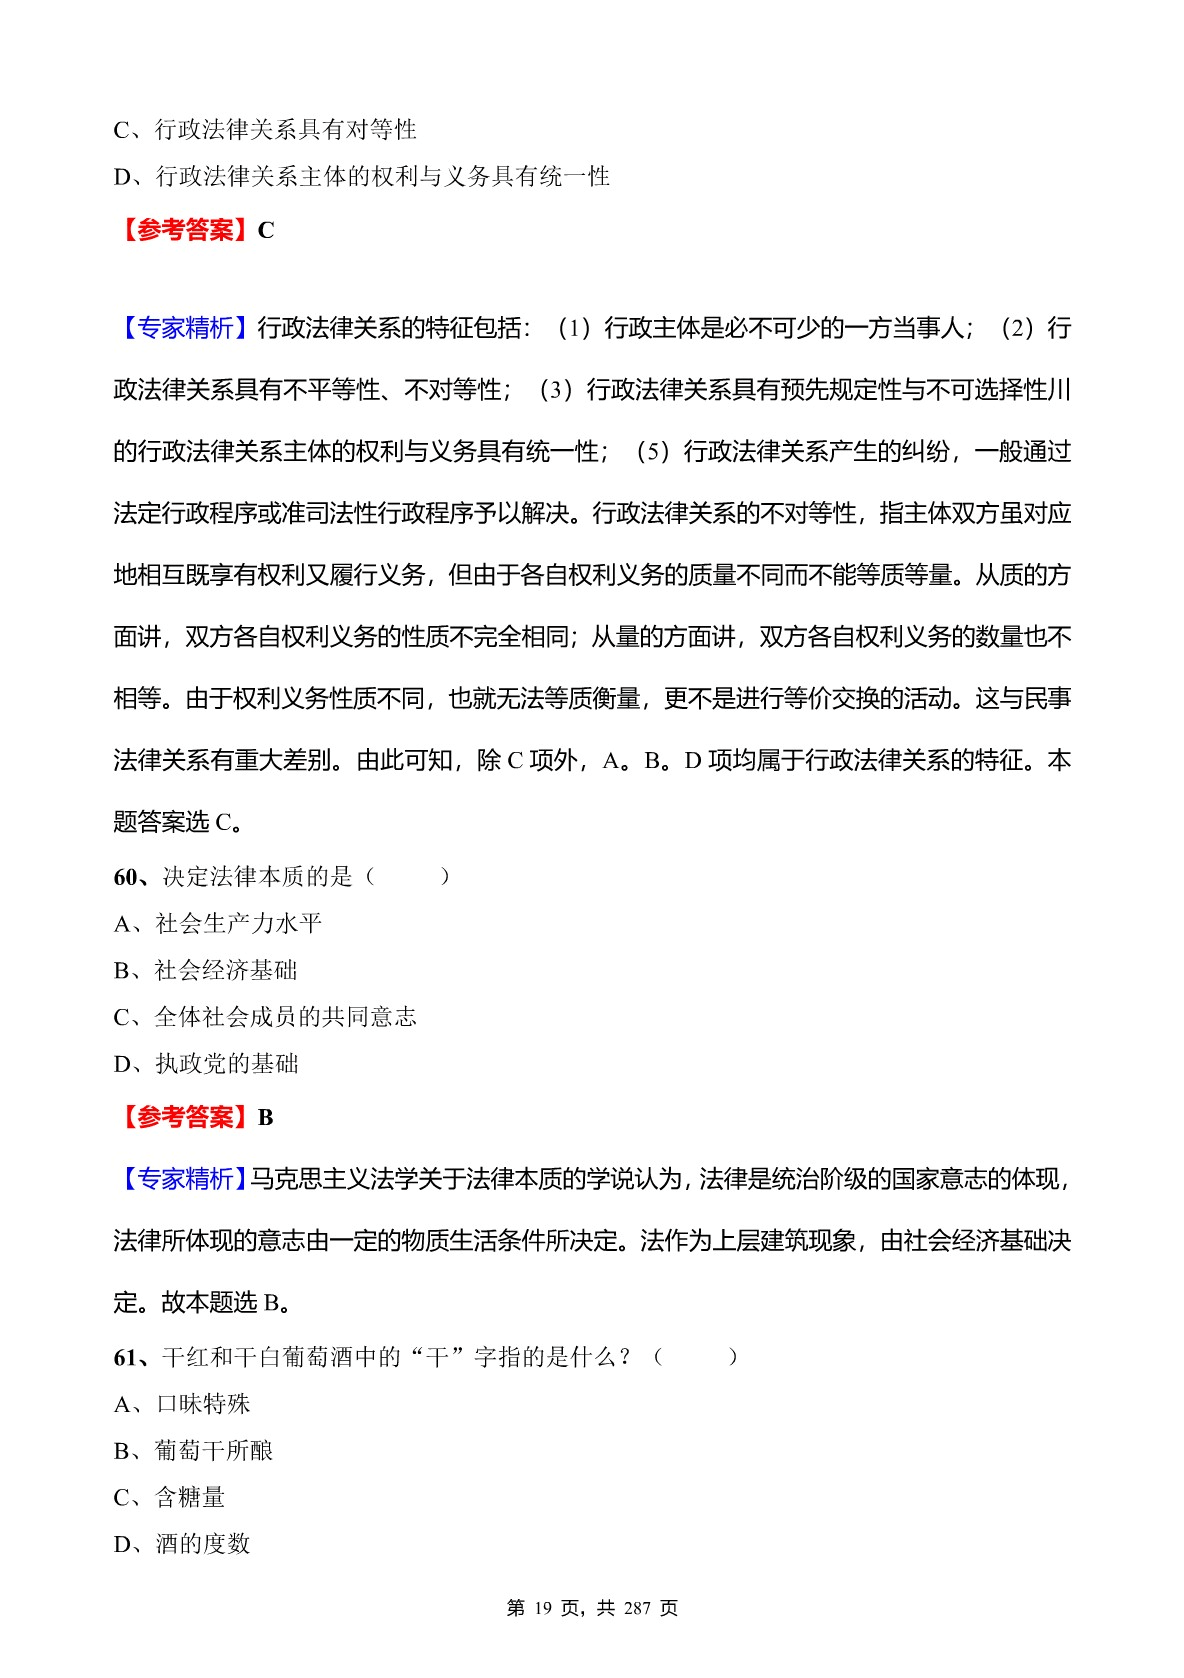 2020年重庆市事业单位招聘考试《综合基础知识》真题库及标准答案